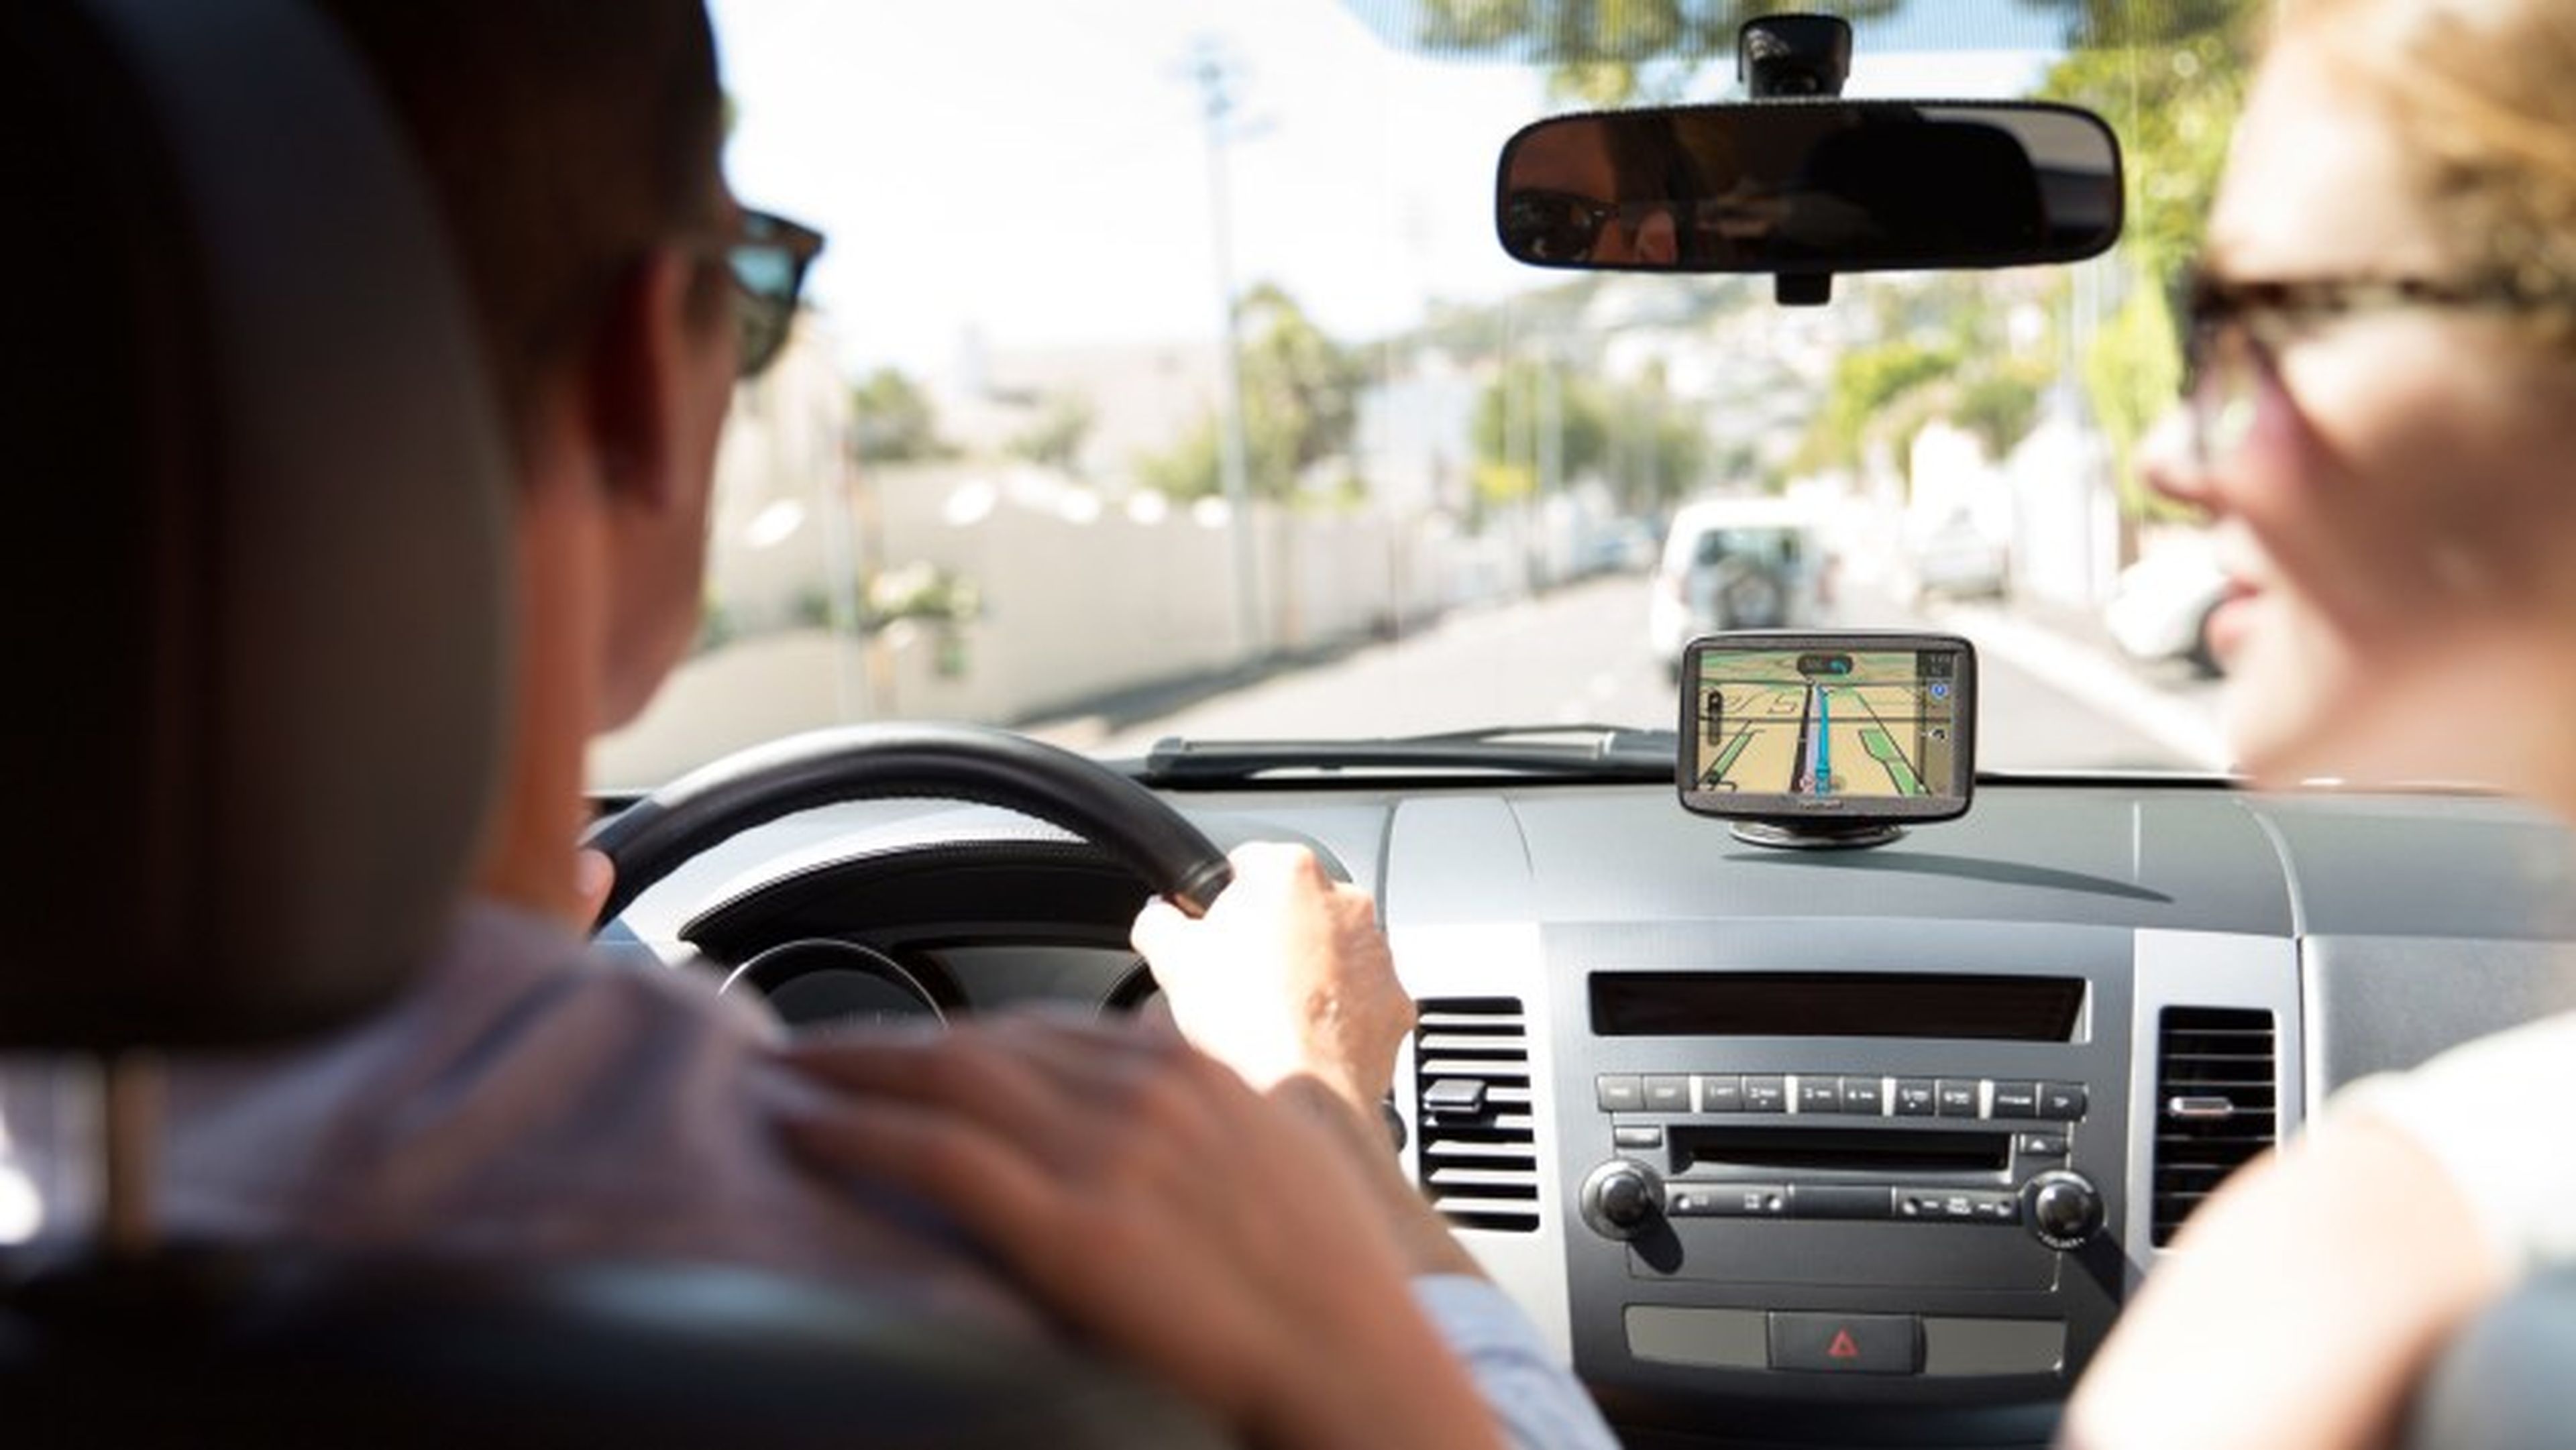 Lo tienes que comprar sí o sí: Navegador GPS con cámara de aparcamiento incluida 64€ por Black Friday | Auto Bild España